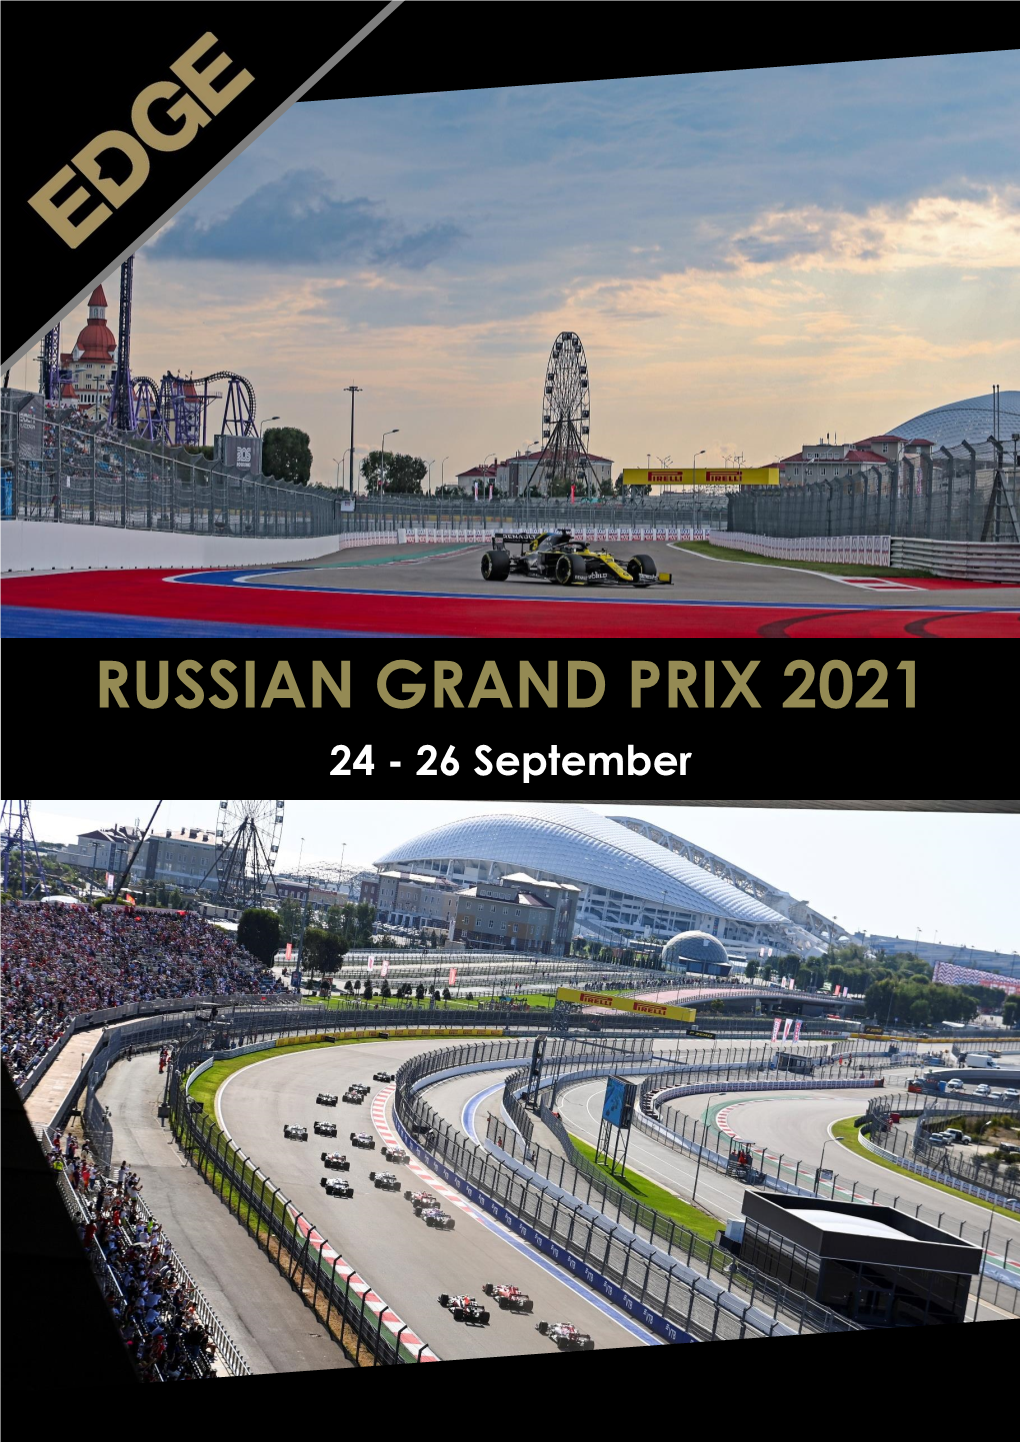 Russian Grand Prix 2021